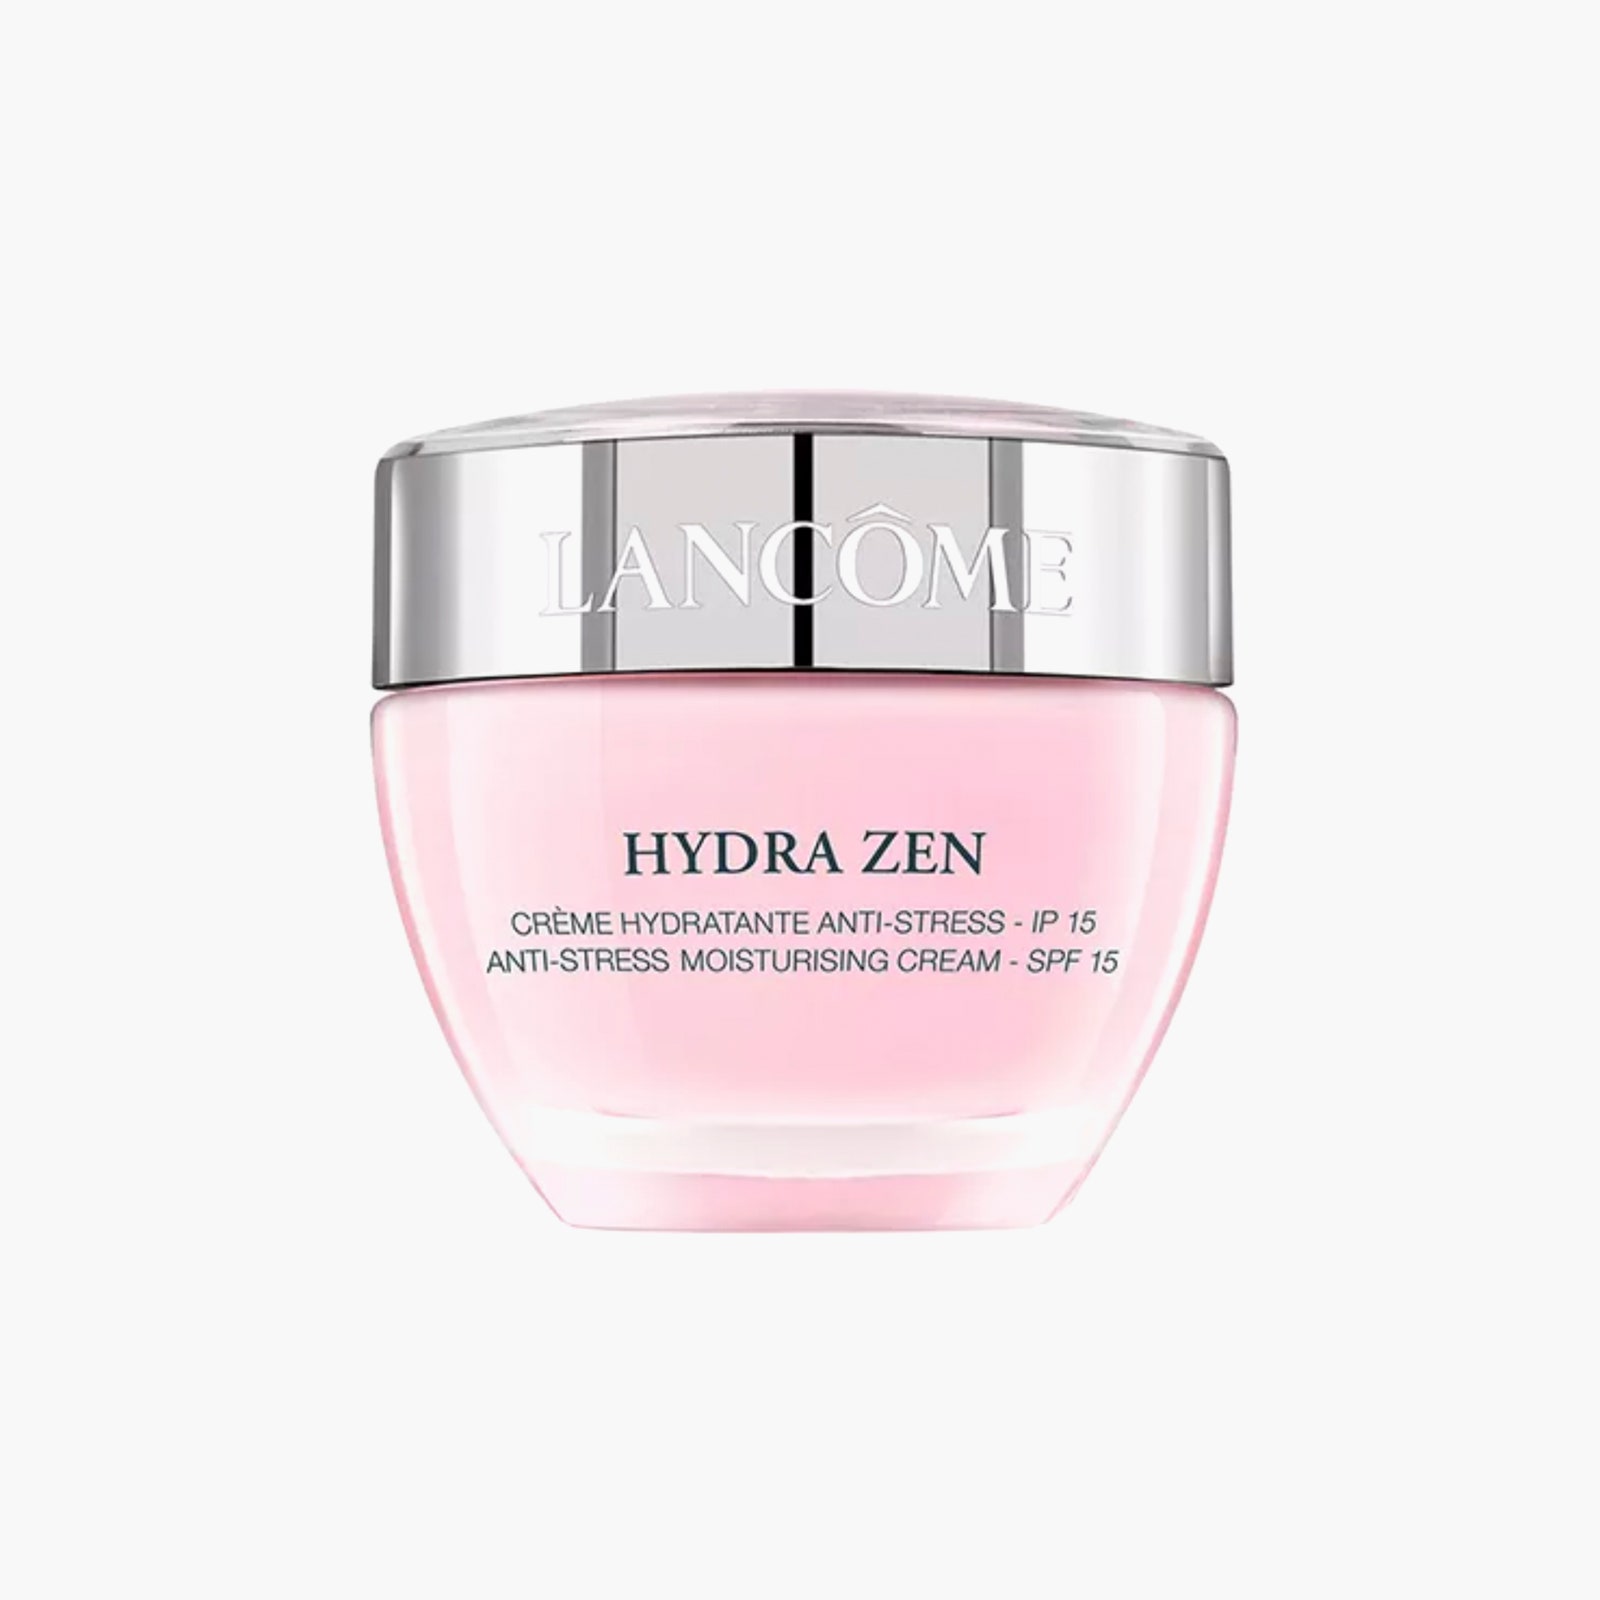 Мгновенно успокаивающий крем для всех типов кожи Hydra Zen SPF15 Lancôme 5289 рублей